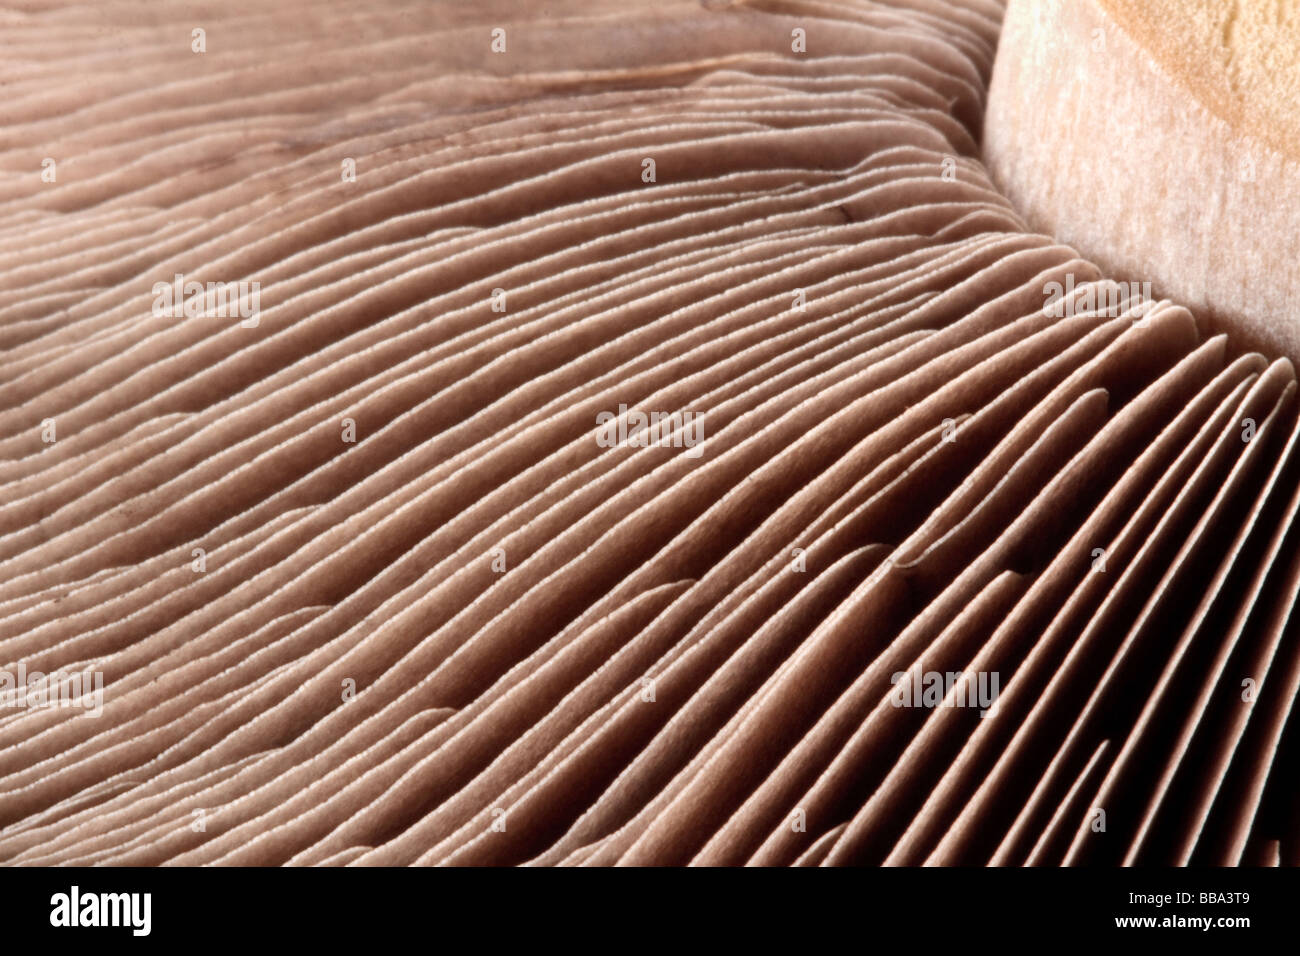 Nahaufnahme Makroaufnahme von einem Pilz Stiel und Lamellen Stockfoto